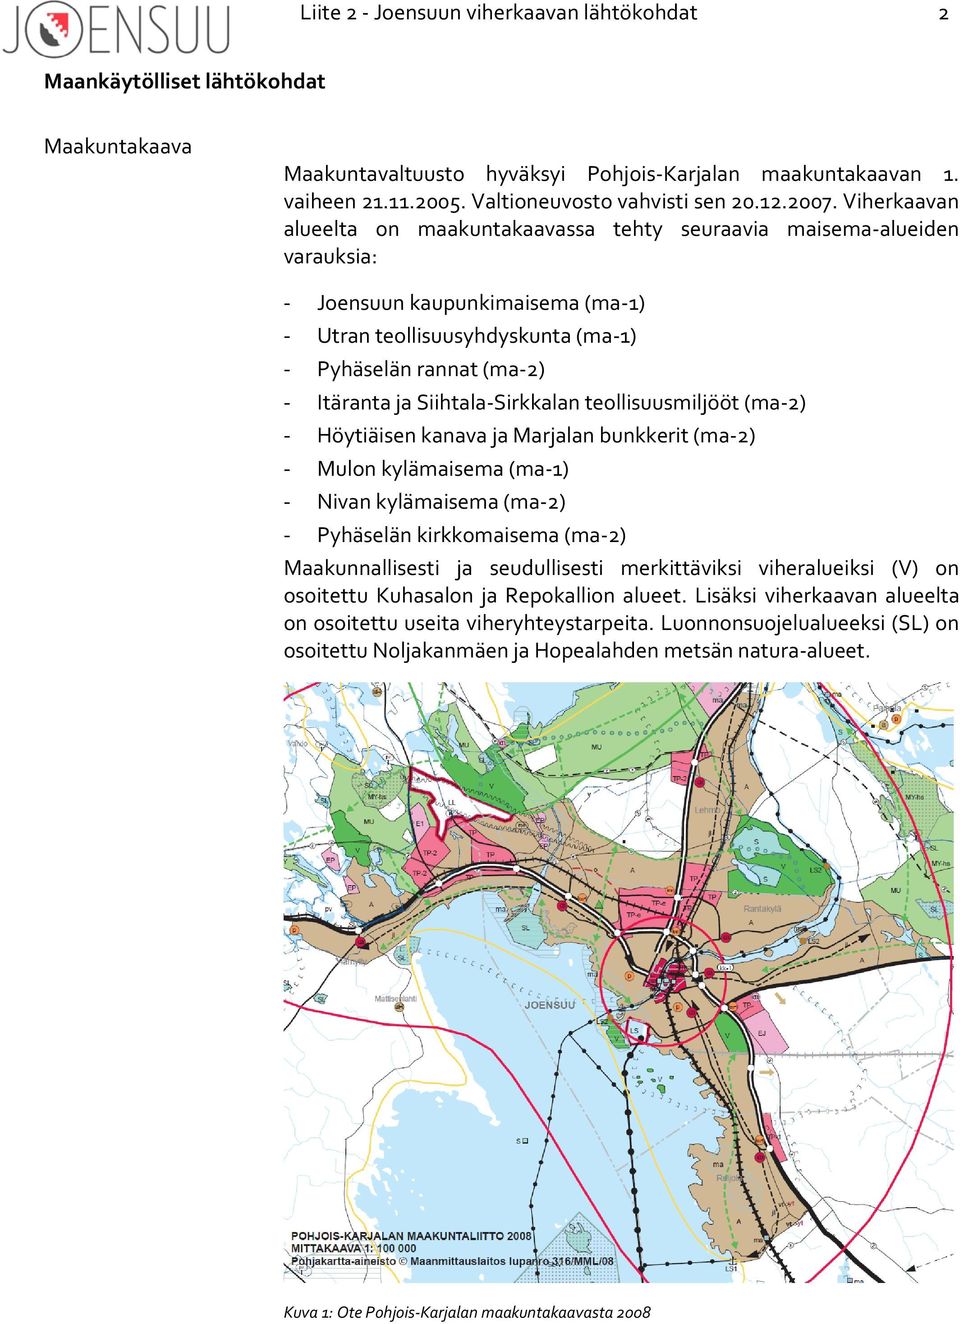 Viherkaavan alueelta on maakuntakaavassa tehty seuraavia maisema-alueiden varauksia: - Joensuun kaupunkimaisema (ma-1) - Utran teollisuusyhdyskunta (ma-1) - Pyhäselän rannat (ma-2) - Itäranta ja